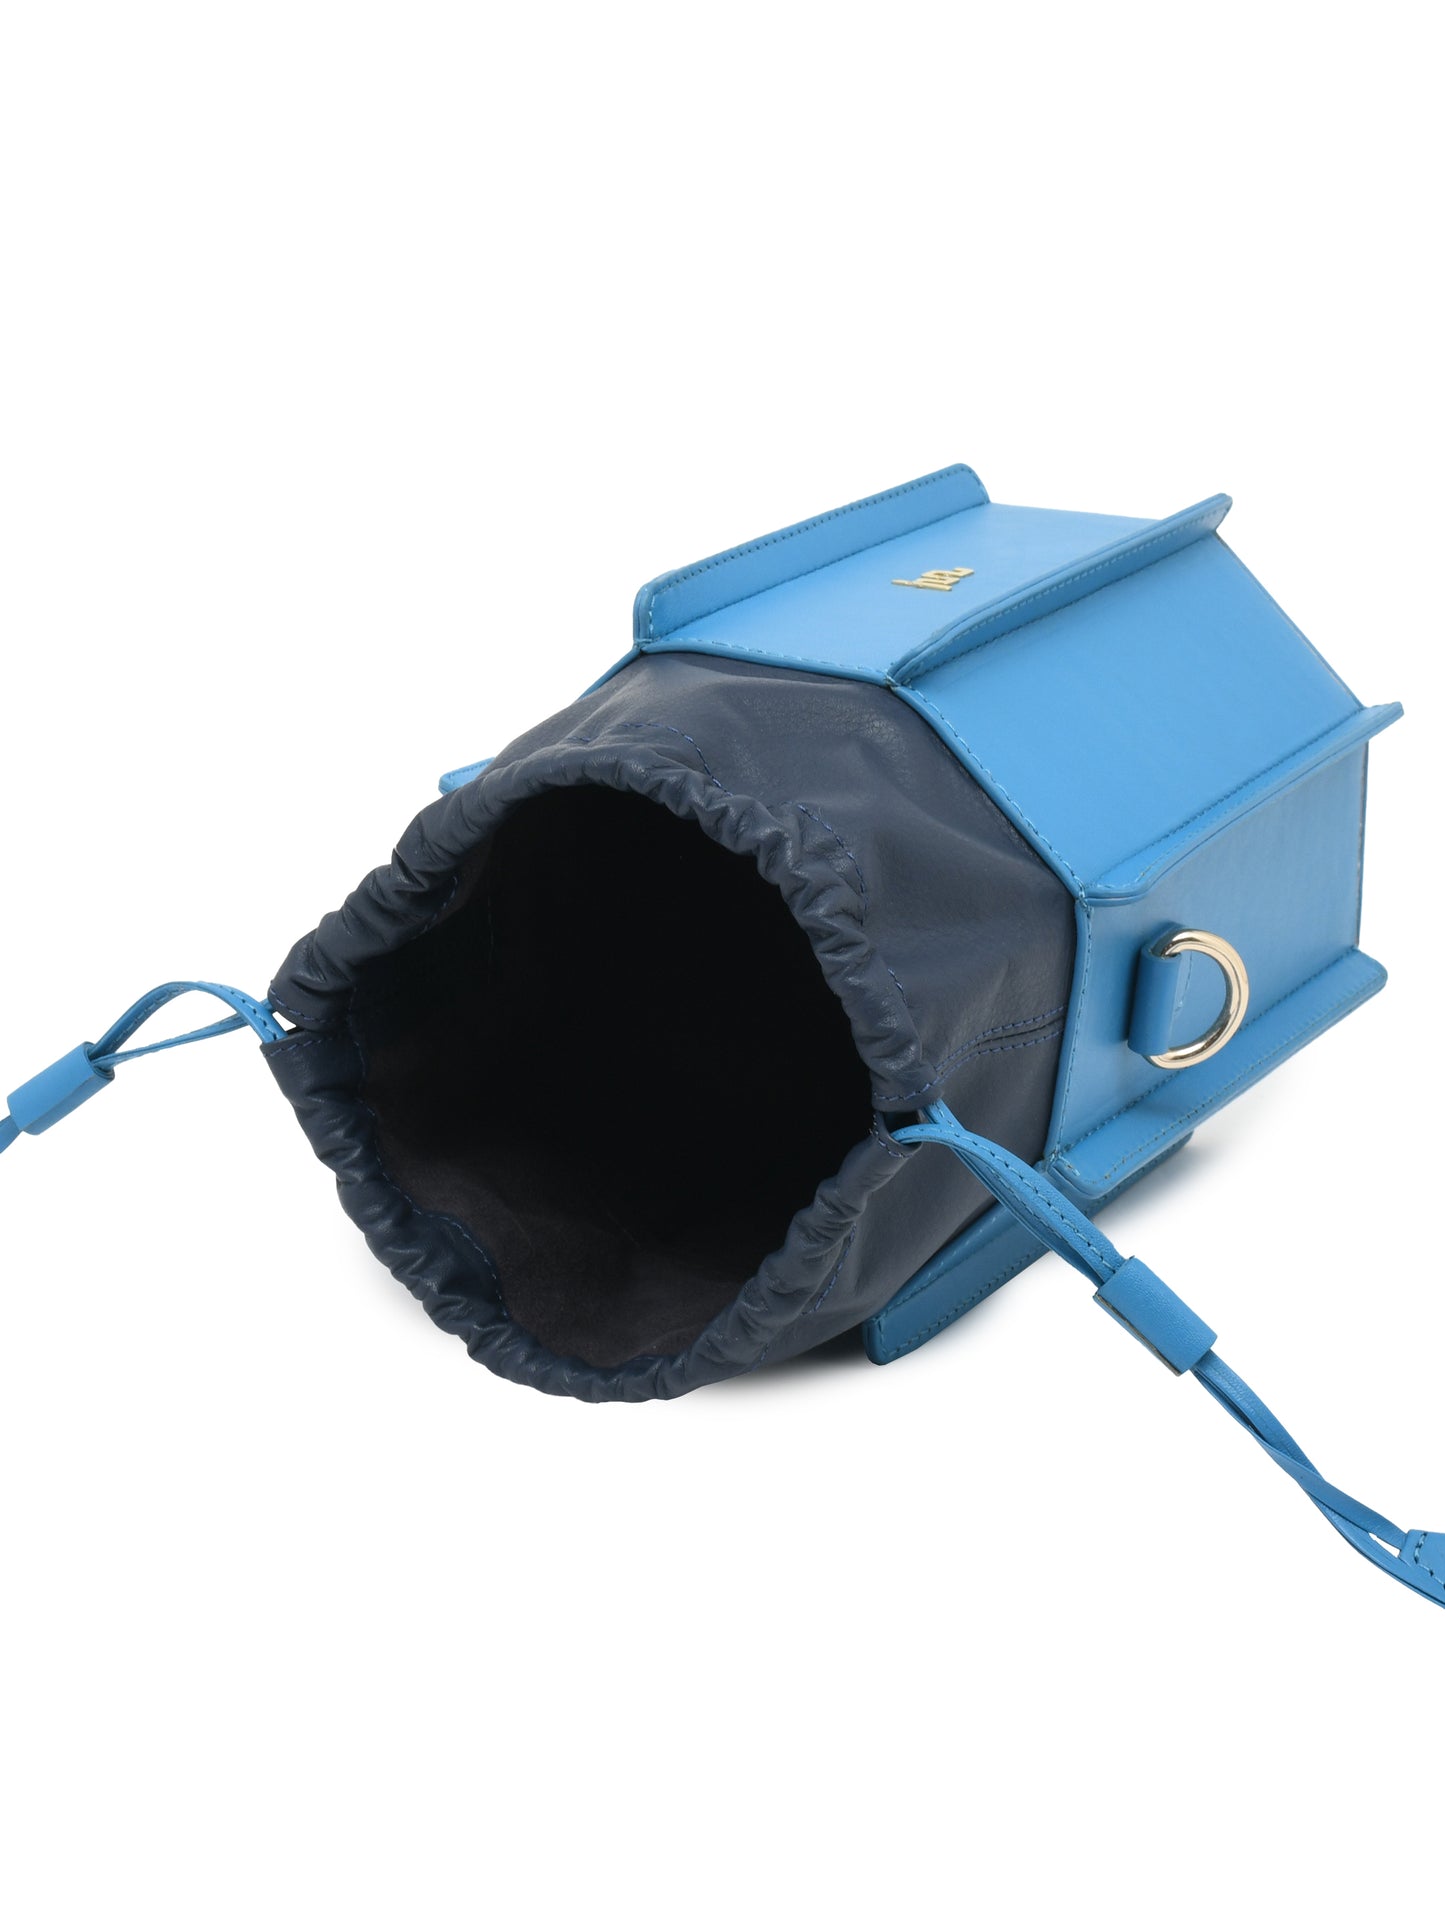 Sunlit Bucket Bag - Jodhpur Blue